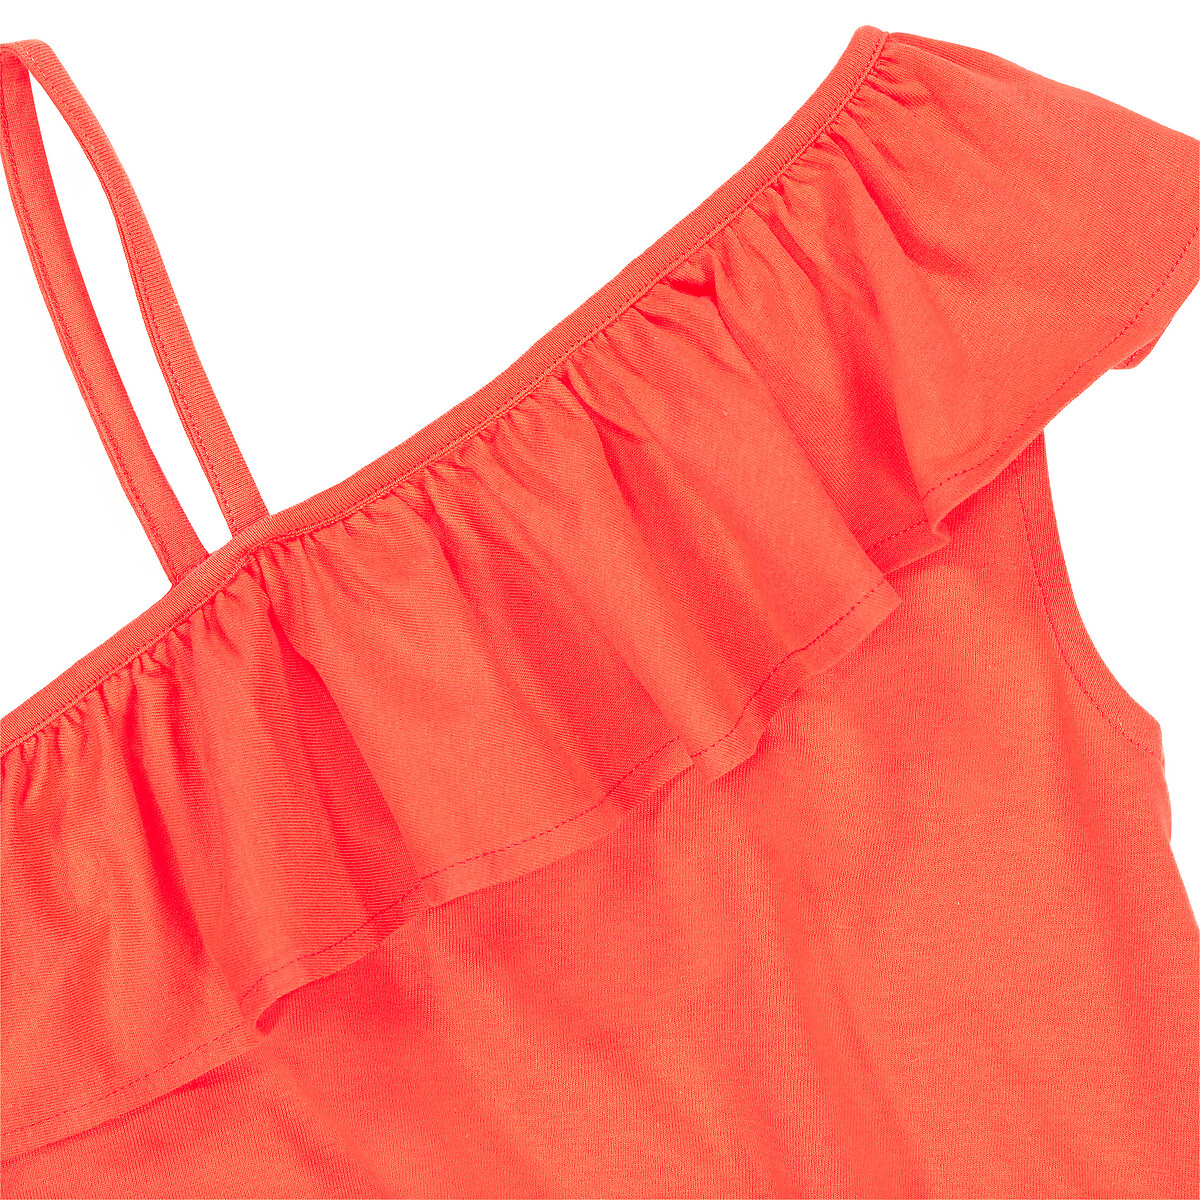 Платье LaRedoute С воланом из биохлопка 3-12 лет 5 лет - 108 см оранжевый, размер 5 лет - 108 см - фото 5